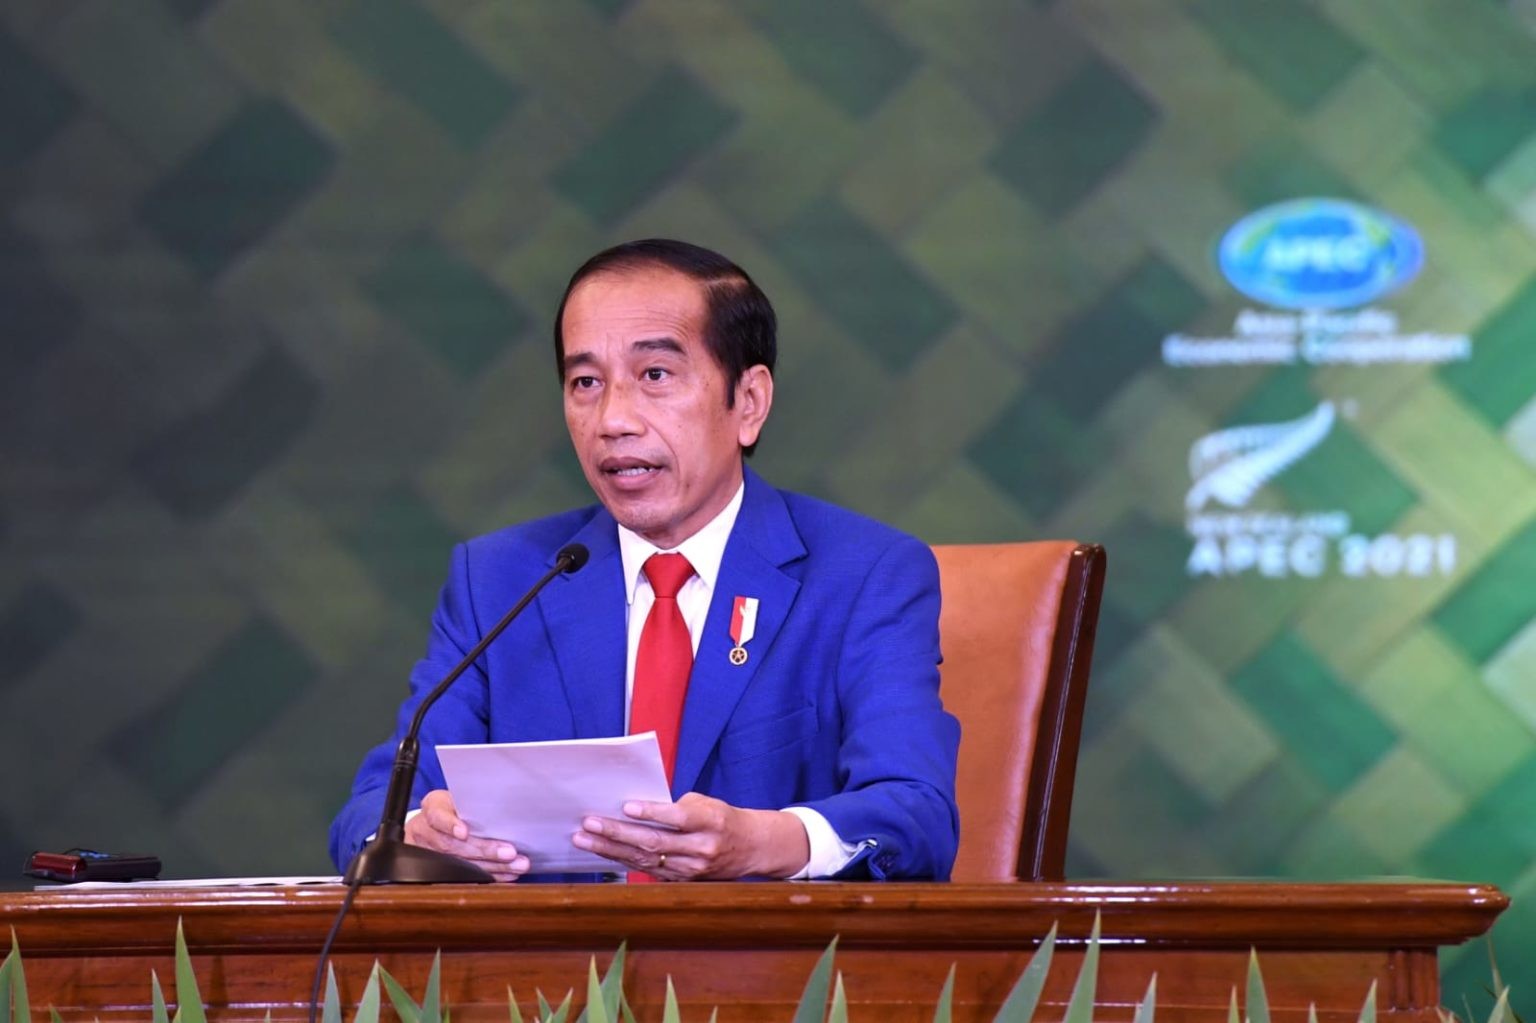 Tổng thống Indonesia kêu gọi APEC thúc đẩy hợp tác để vượt qua đại dịch Covid-19